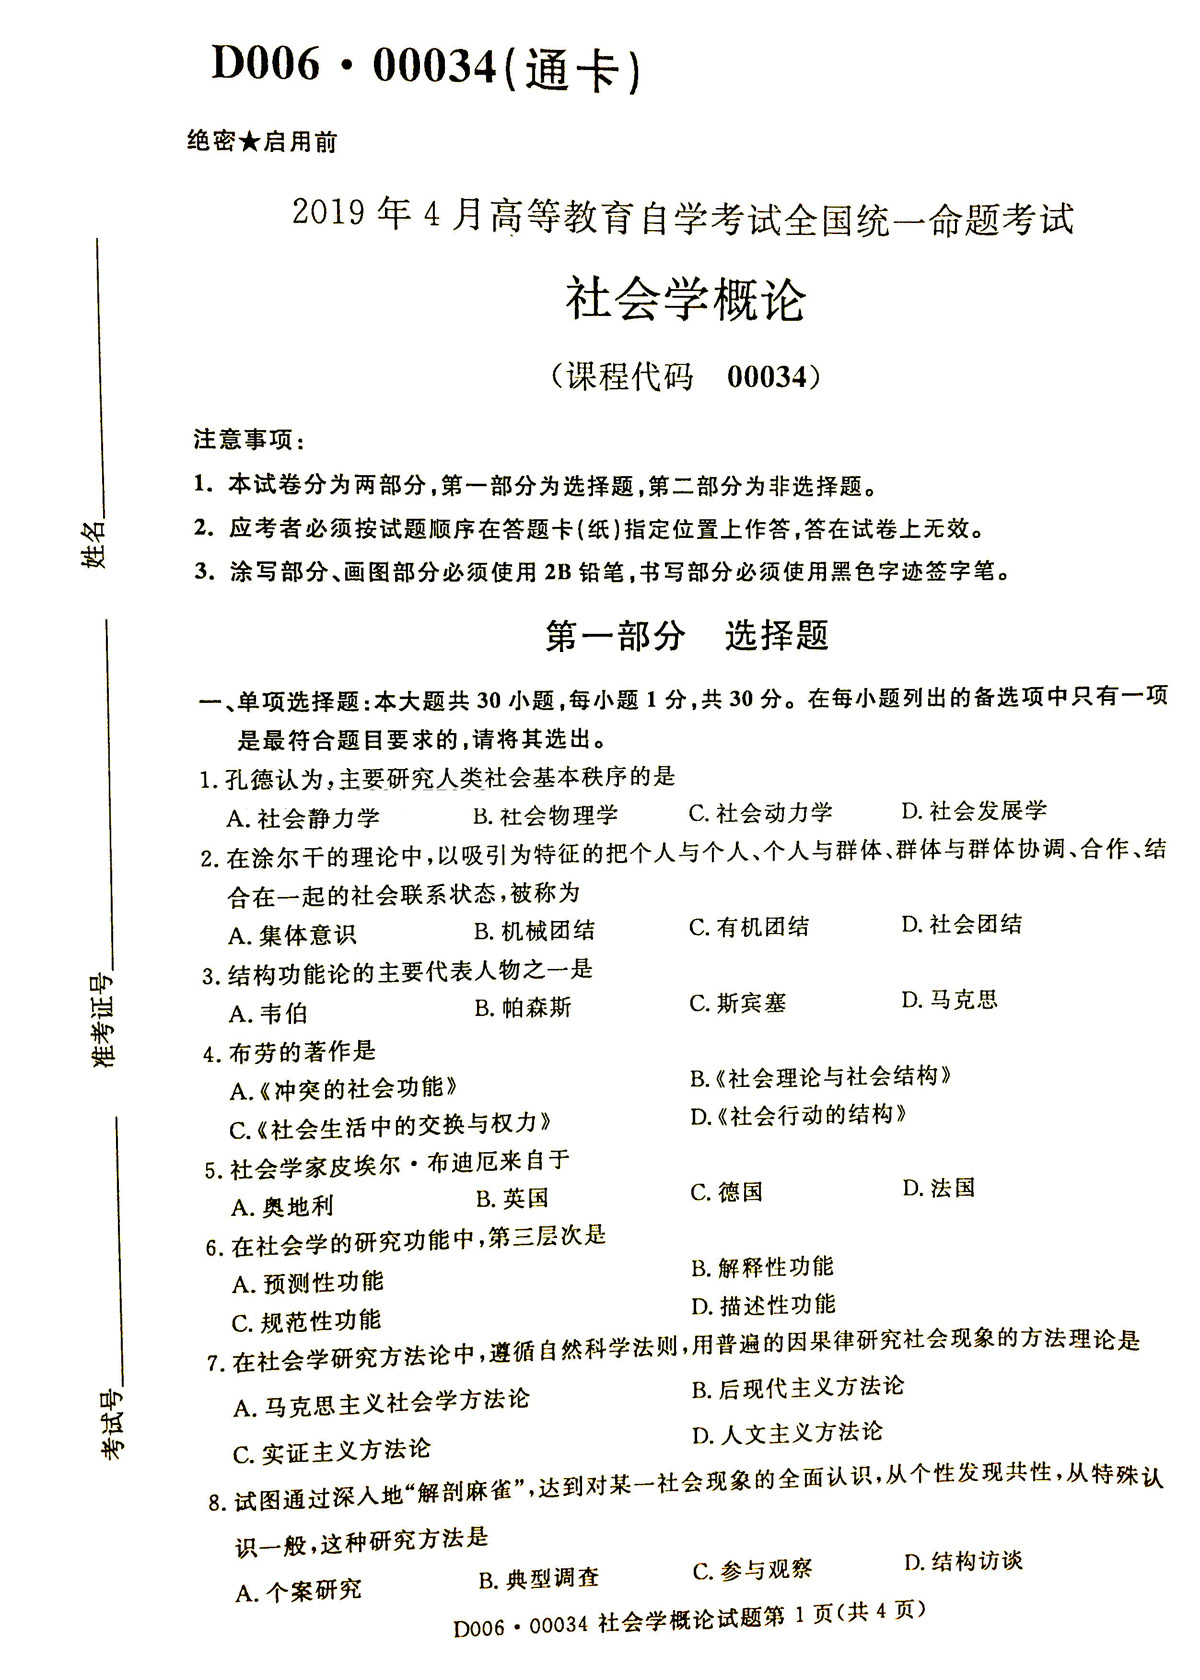 2019年04月贵州省自学考试《社会学概论》00034试题和答案